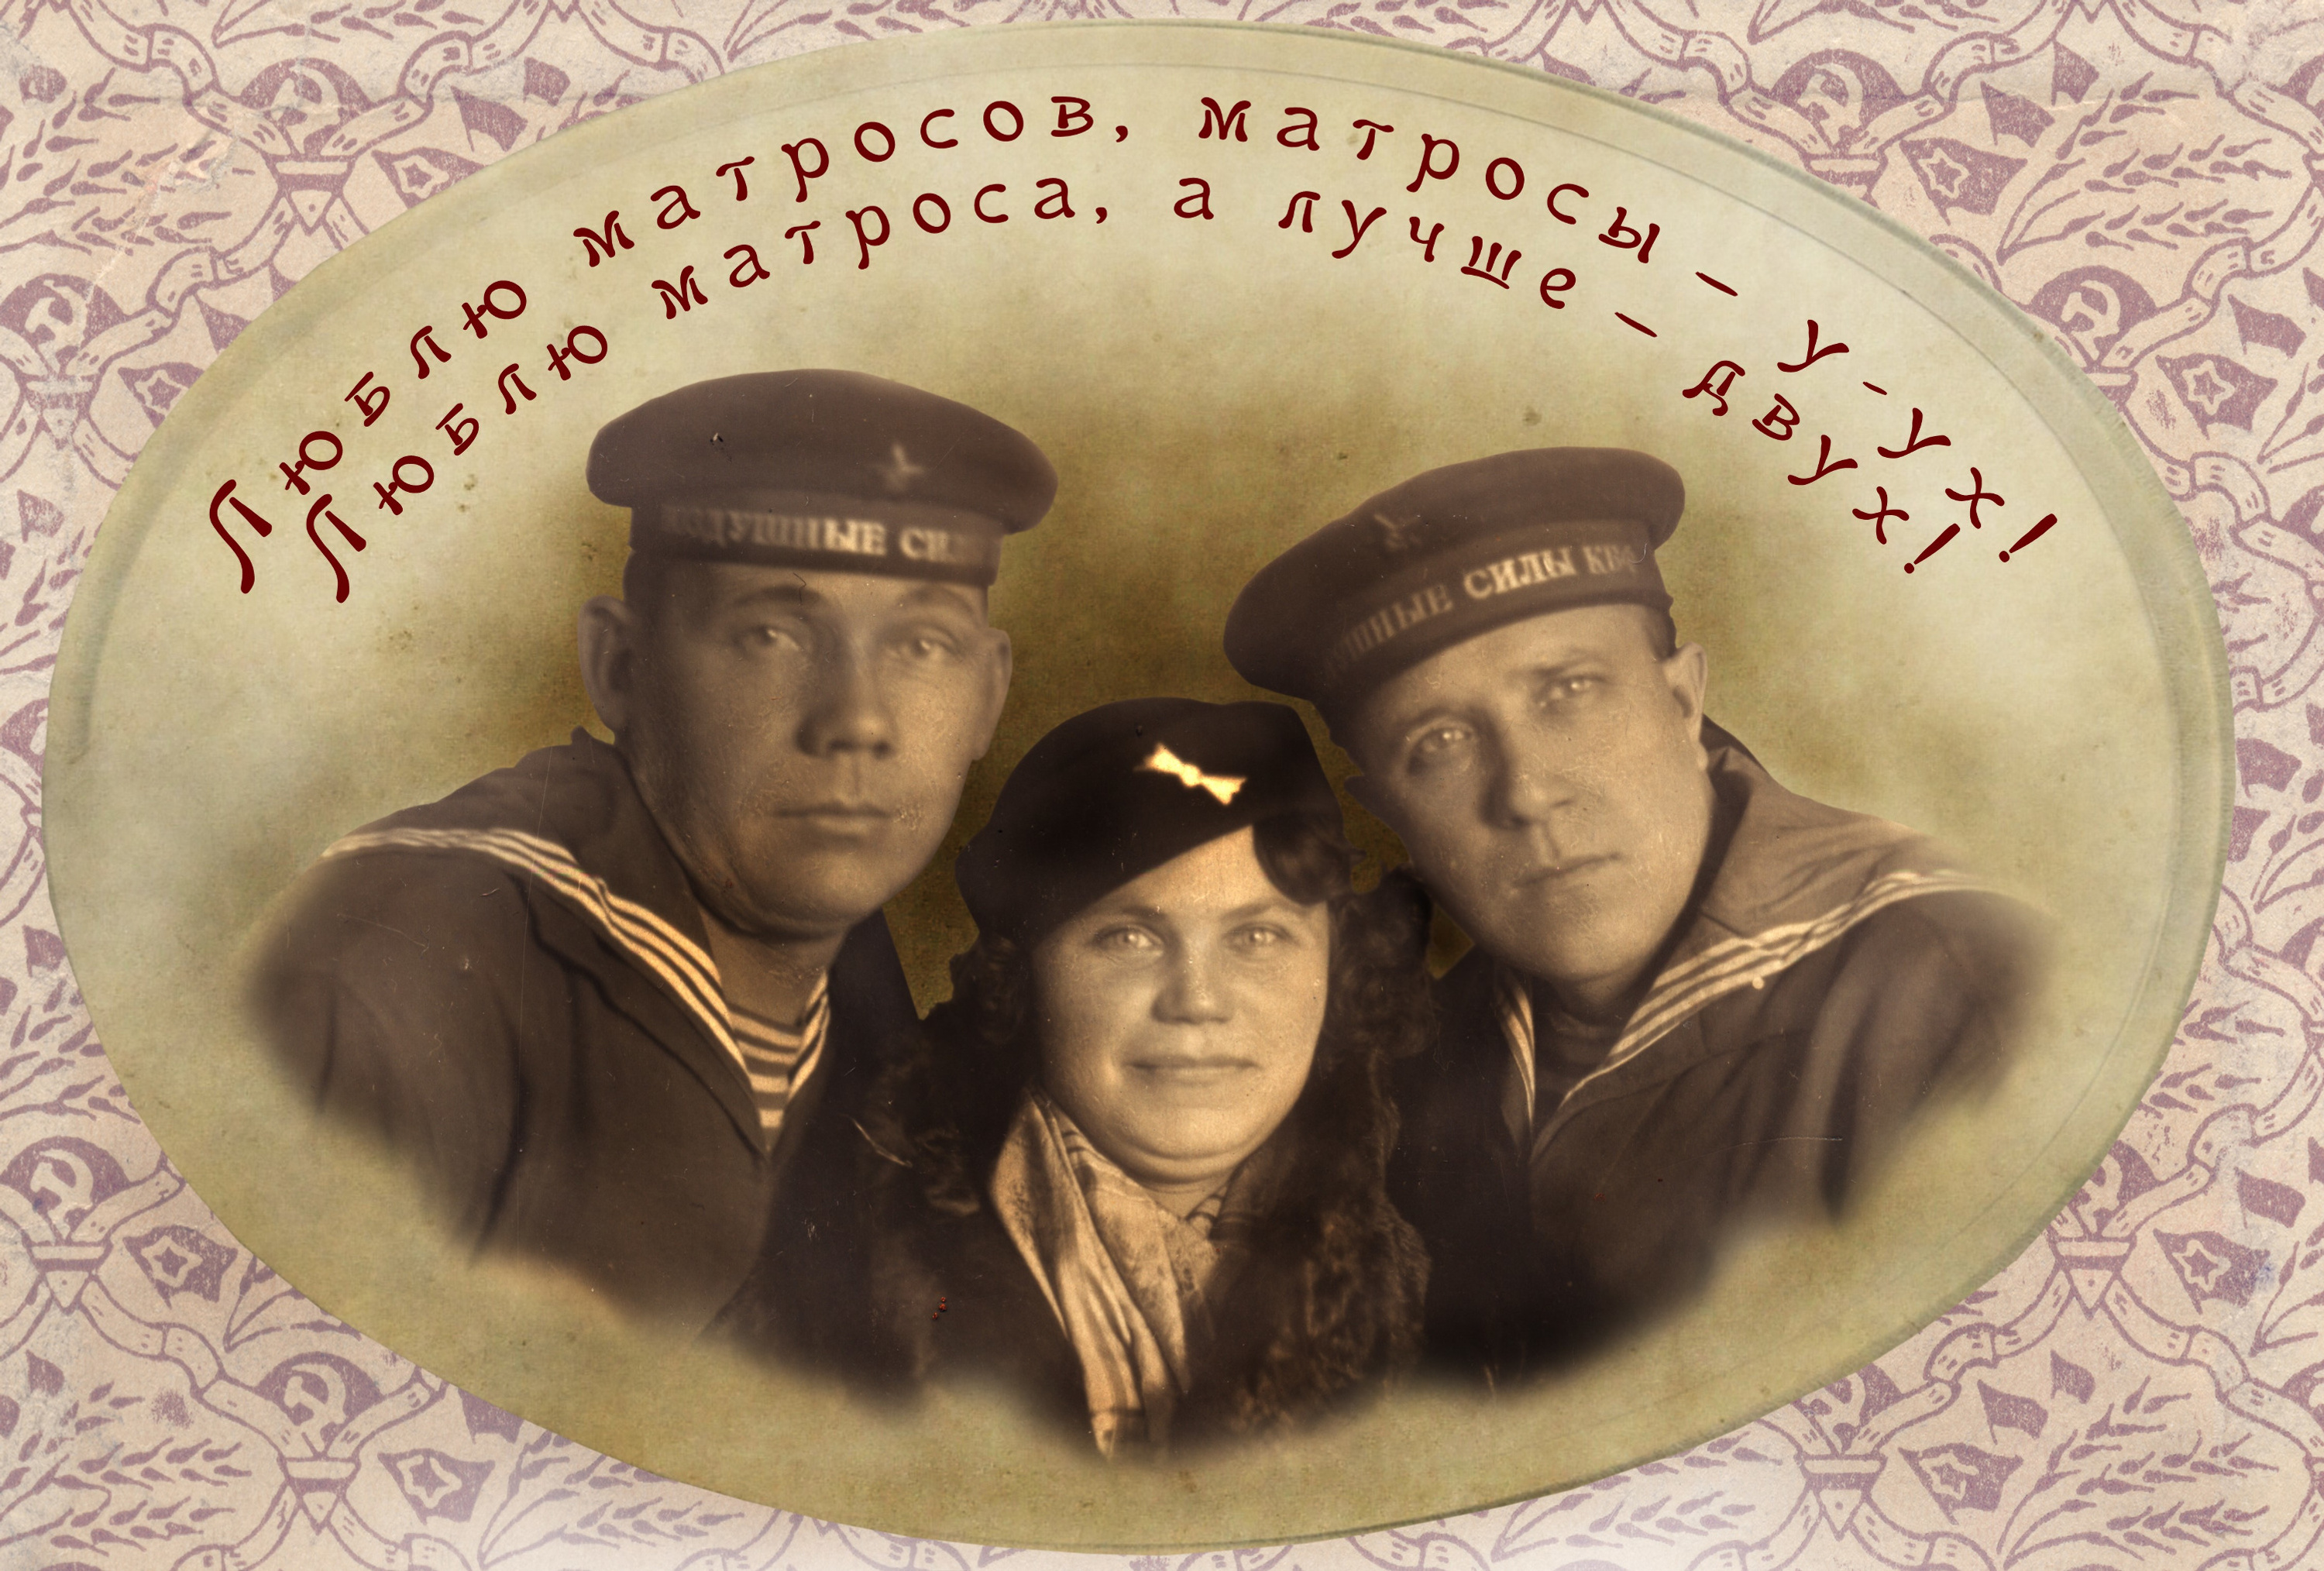 Рекламный плакат «Красного матроса» (2011) Из архива И. Шушарина